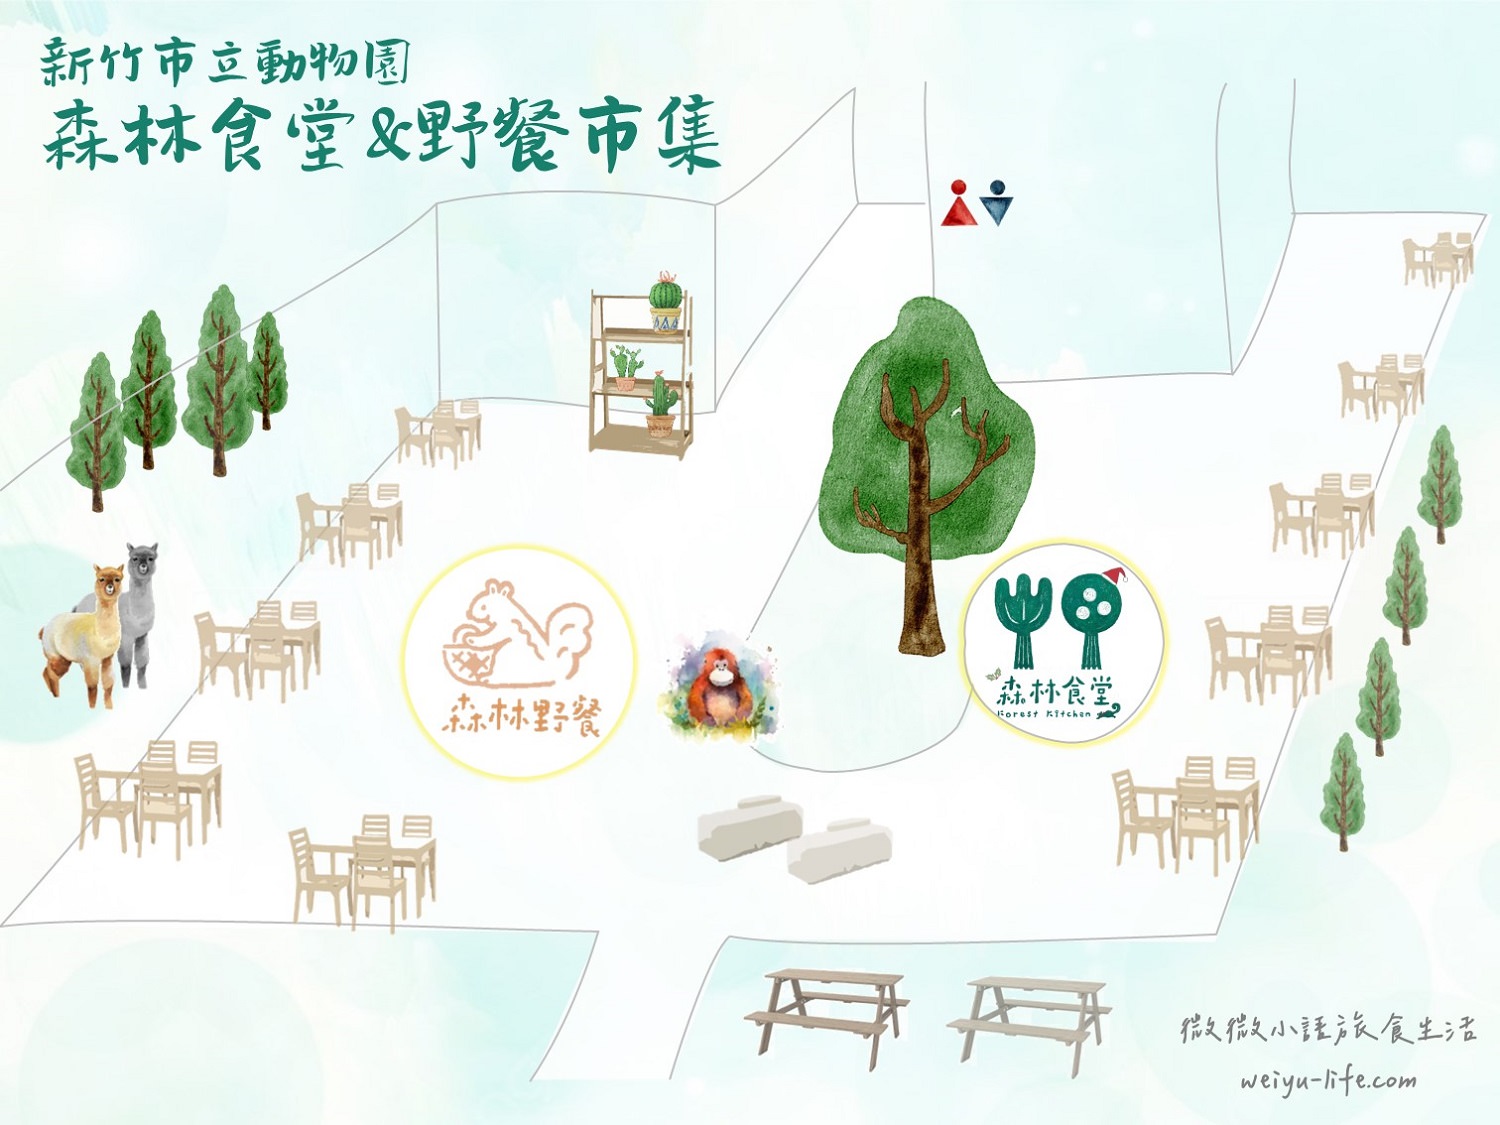 新竹市立動物園森林食堂&野餐市集店內平面圖